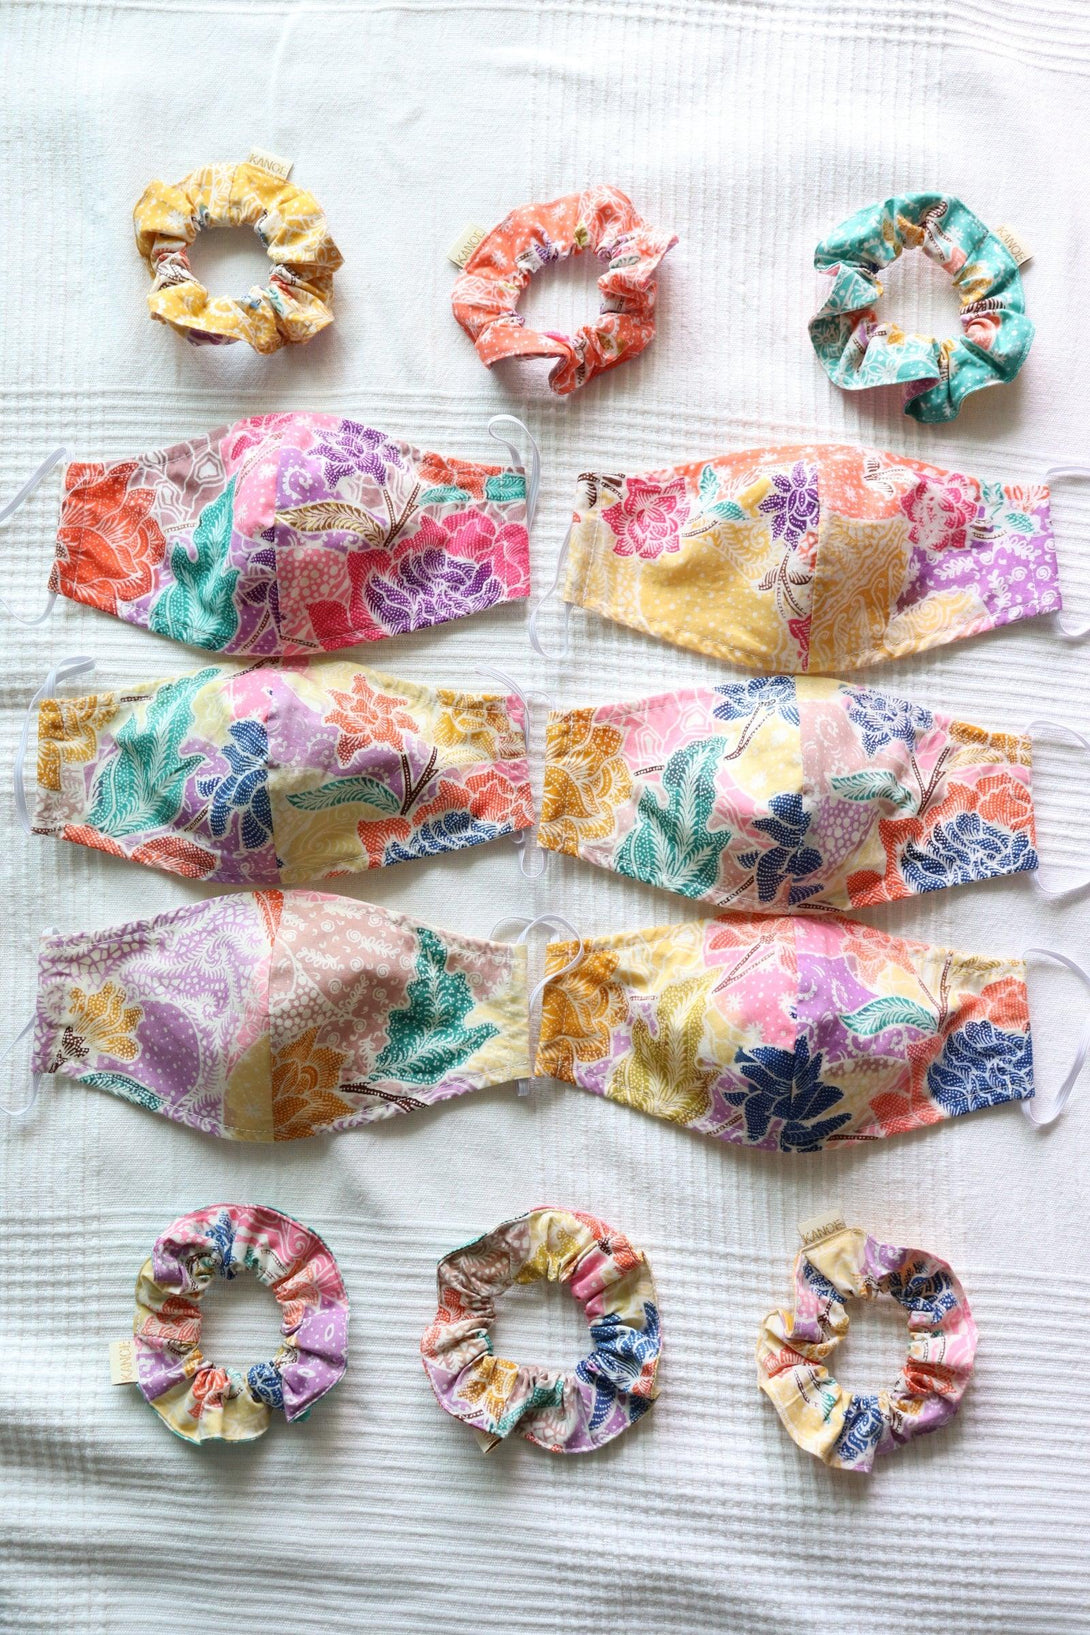 Candy 3 Ply Handstamp Cotton Batik Reusable Face Mask & Scrunchie Set - Pink N' Proper